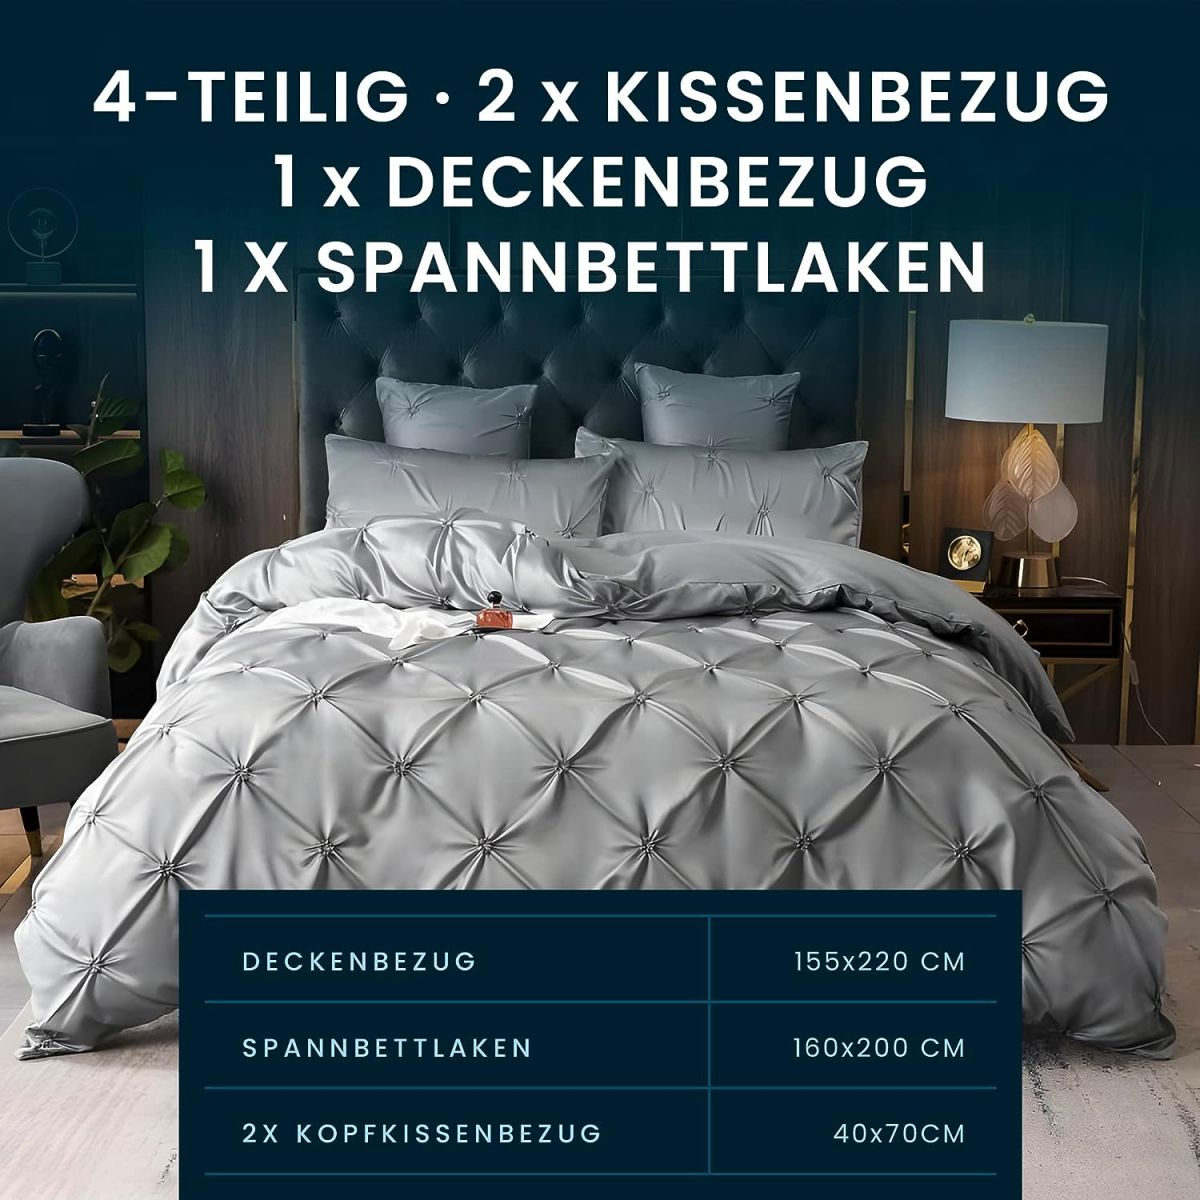 Pierre Mond bedding set 4 pieces 155×220 cm, 1 sheet, 1 duvet cover, 2 pillowcases 40×80 cm, gray